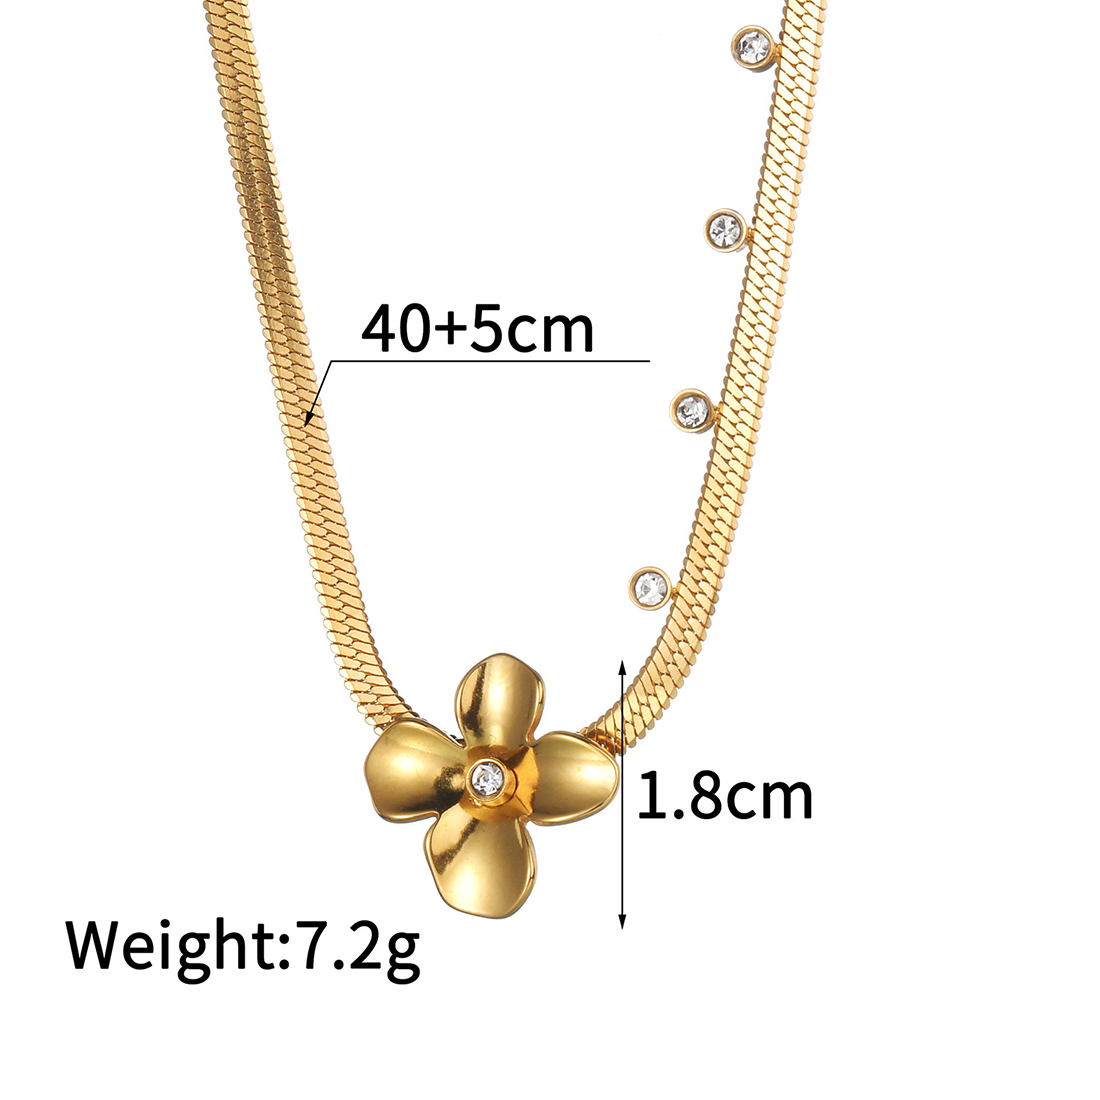 B necklace 40cm